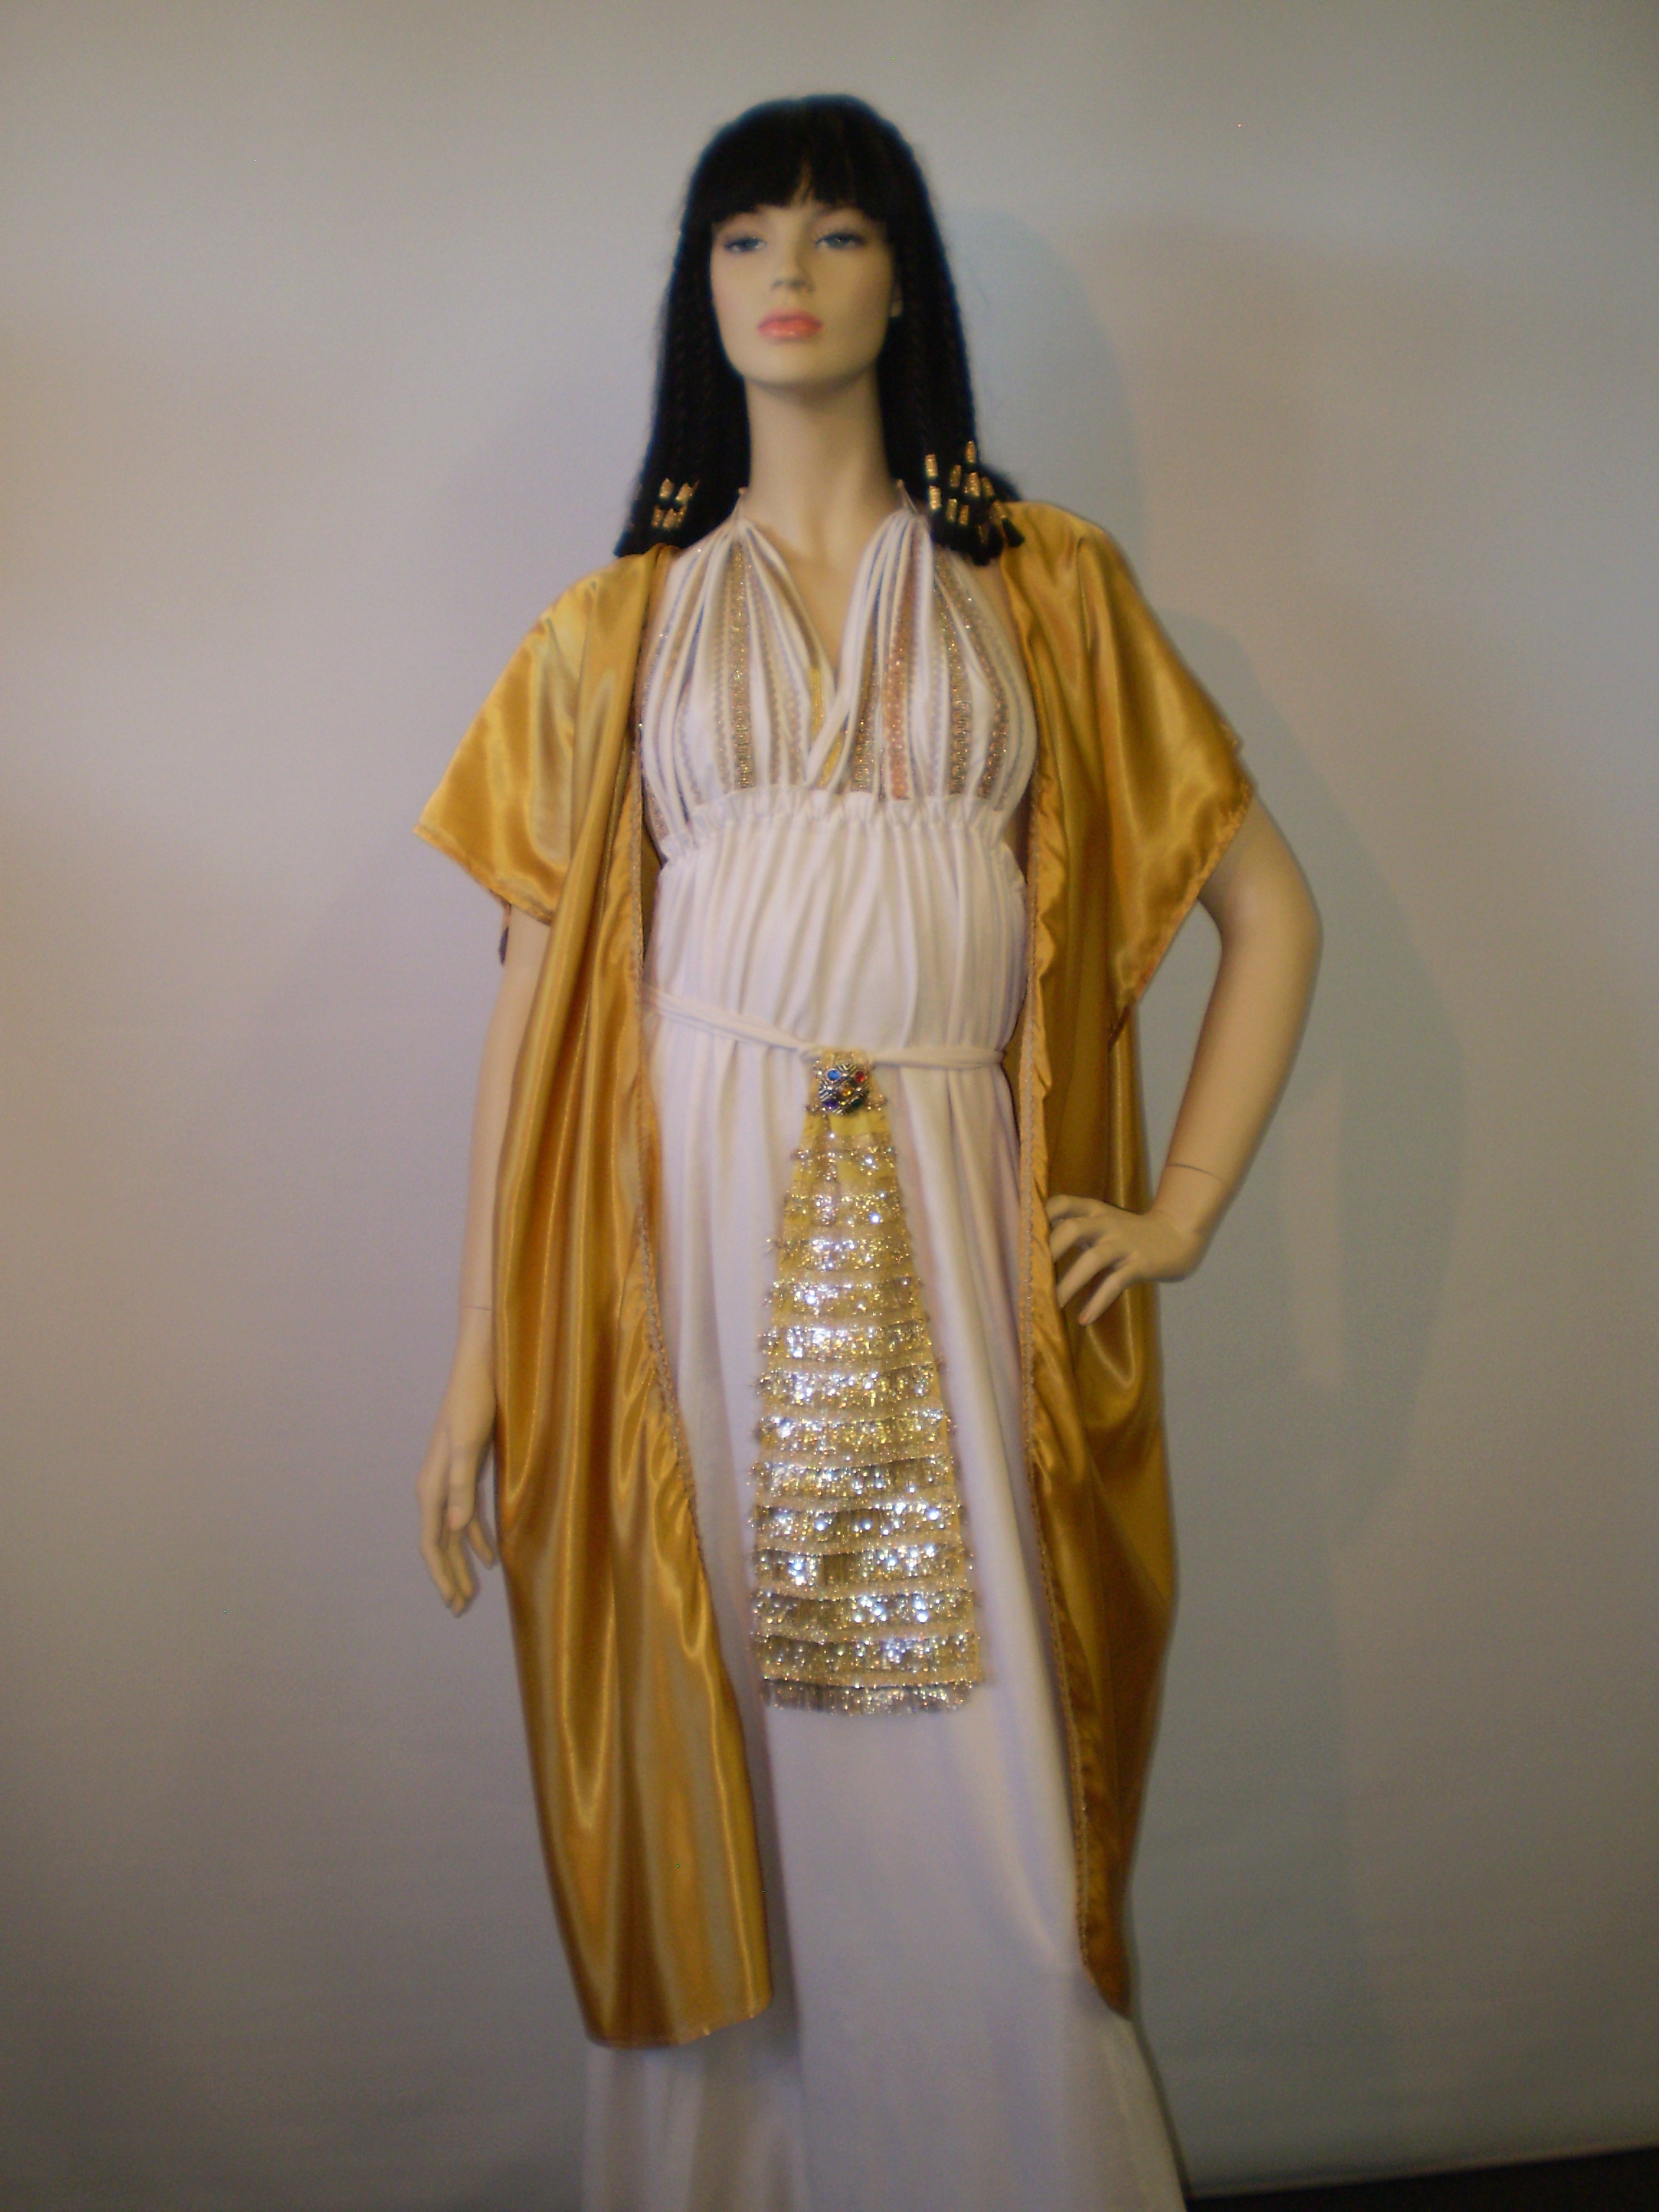 Antony & Cleopatra Costumes - Couple Costume Ideas